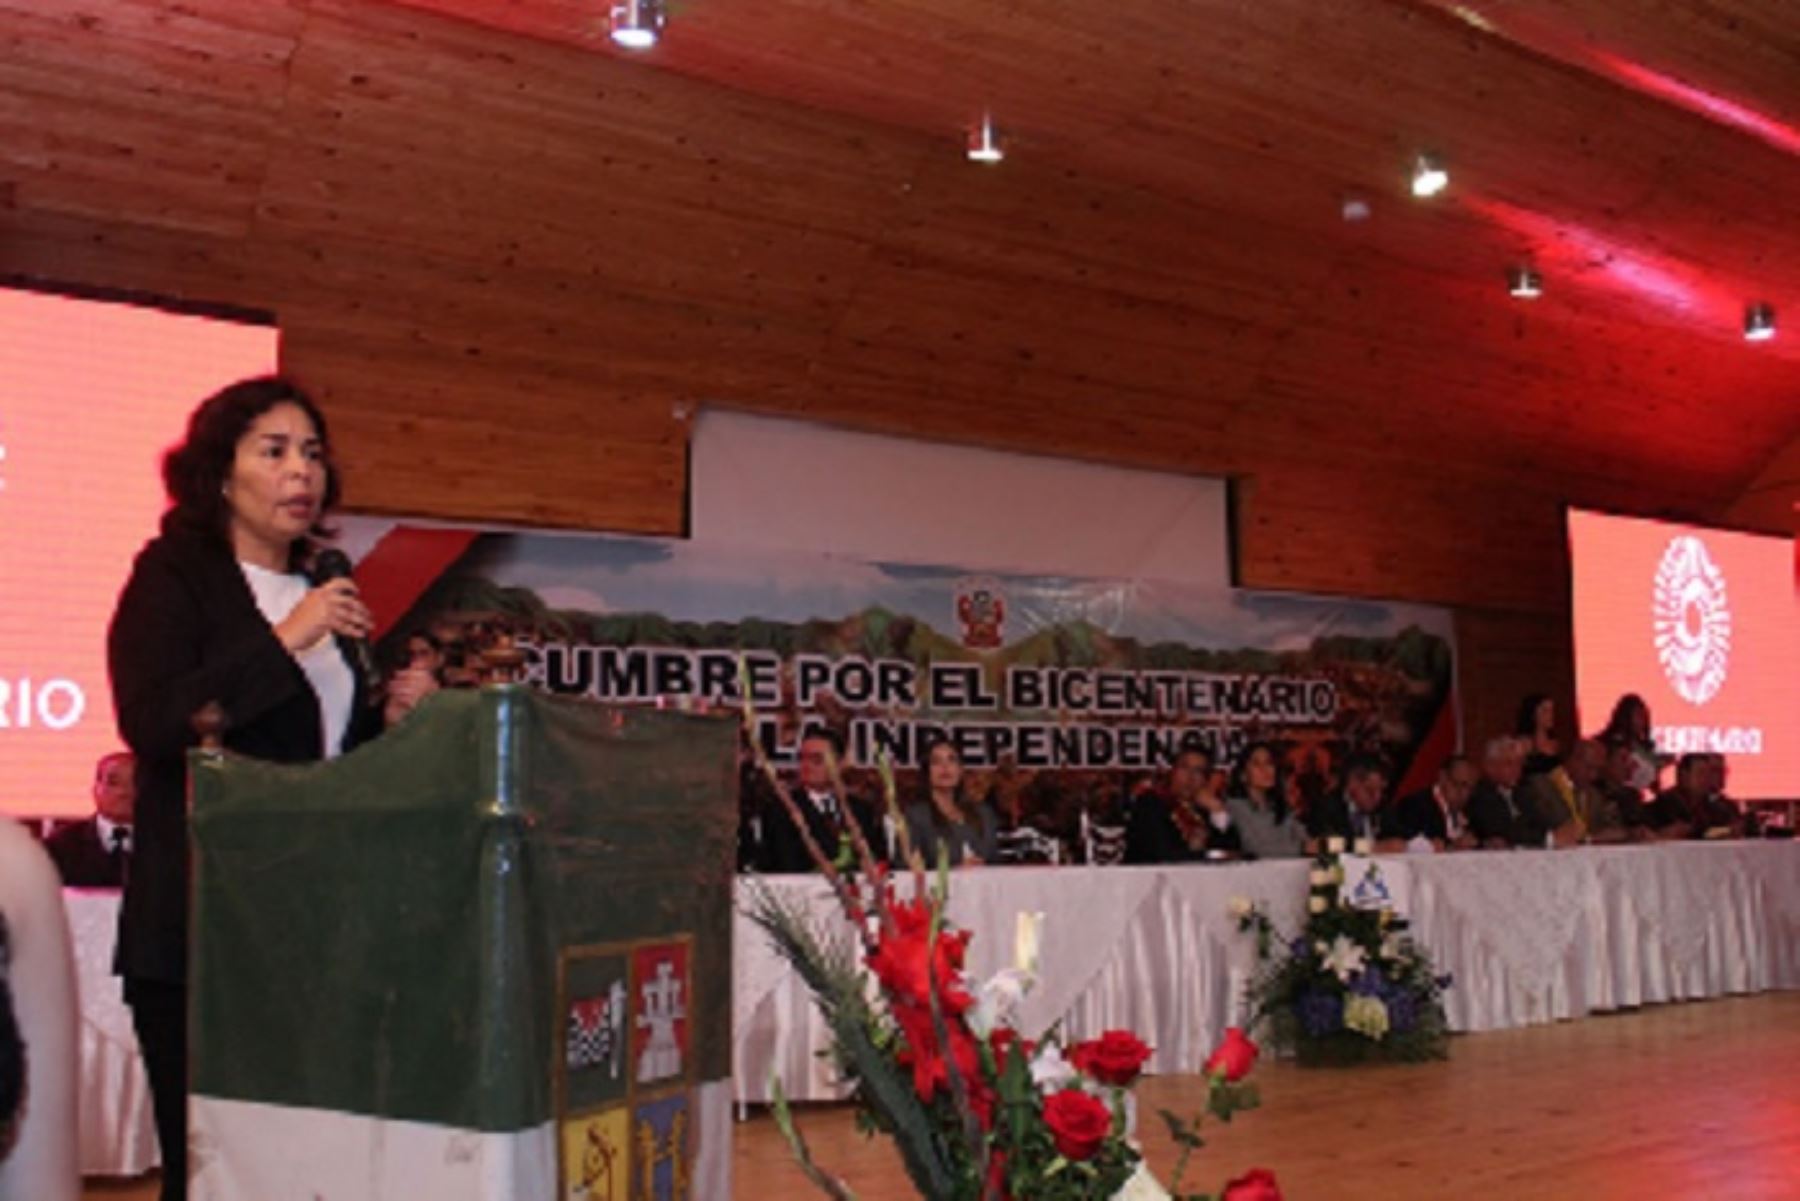 La ministra de Cultura, Patricia Balbuena, agradeció el entusiasmo de los gobernadores regionales para impulsar las iniciativas que permitan a las peruanas y peruanos, celebrar el Bicentenario de la Independencia.